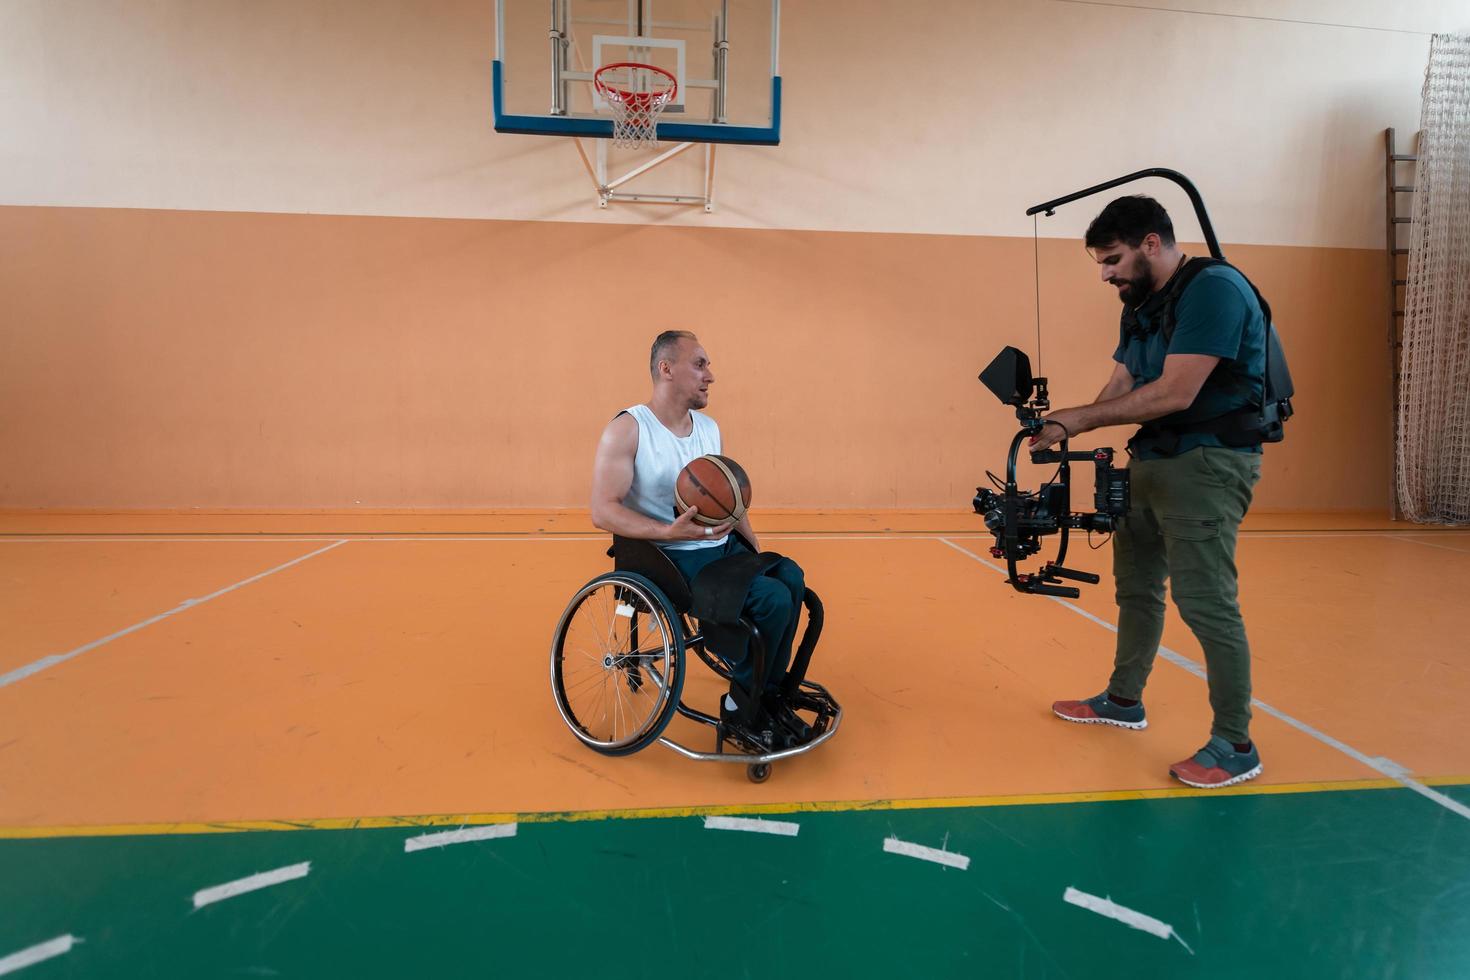 ein kameramann mit professioneller ausrüstung filmt ein spiel der nationalmannschaft im rollstuhl bei einem spiel in der arena foto